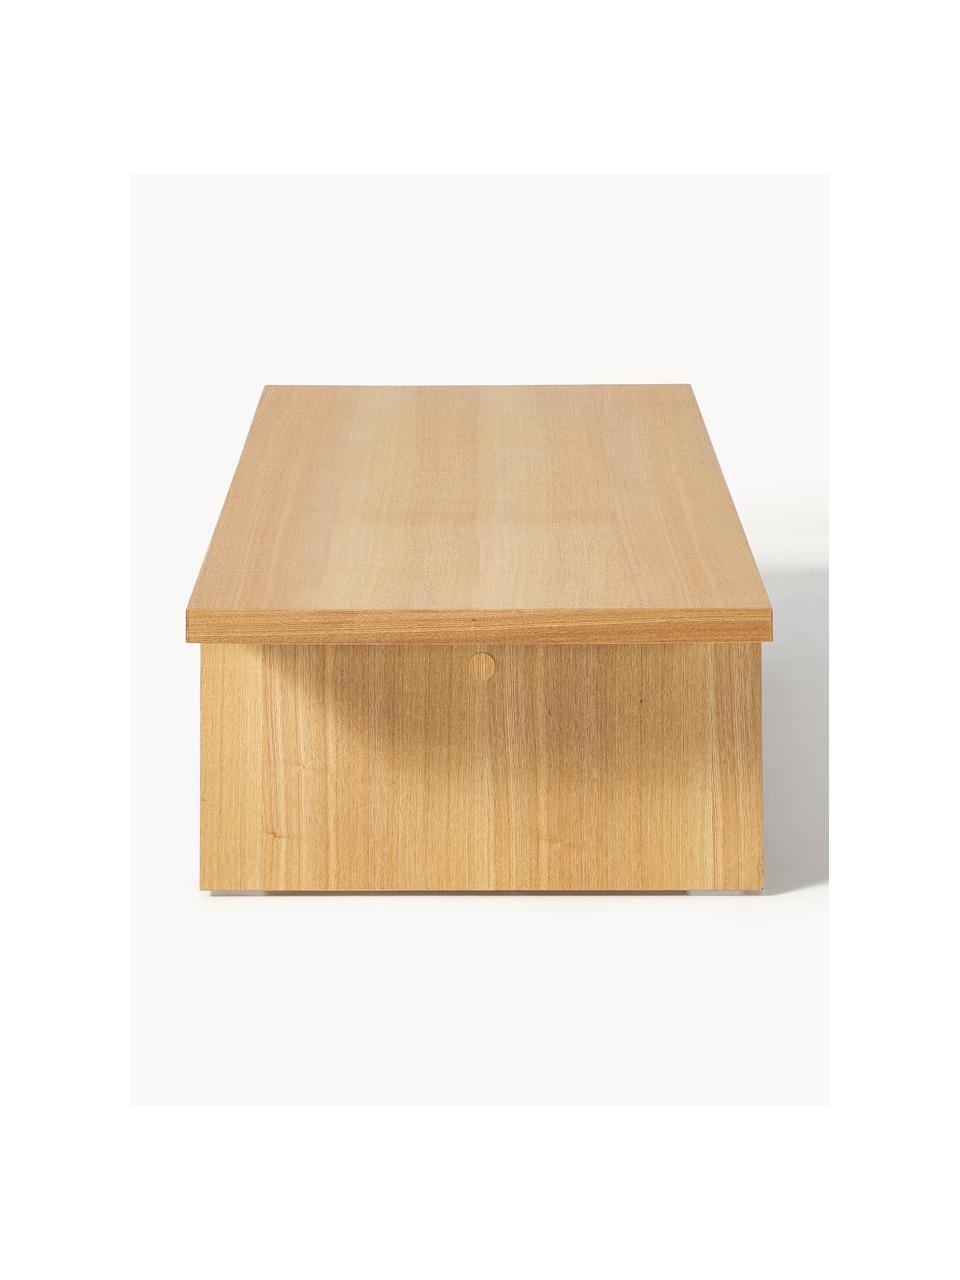 Nízký dřevěný konferenční stolek Toni, Lakovaná MDF deska (dřevovláknitá deska střední hustoty) s dubovou dýhou

Tento produkt je vyroben z udržitelných zdrojů dřeva s certifikací FSC®., Jasanové dřevo, Š 120 cm, V 25 cm